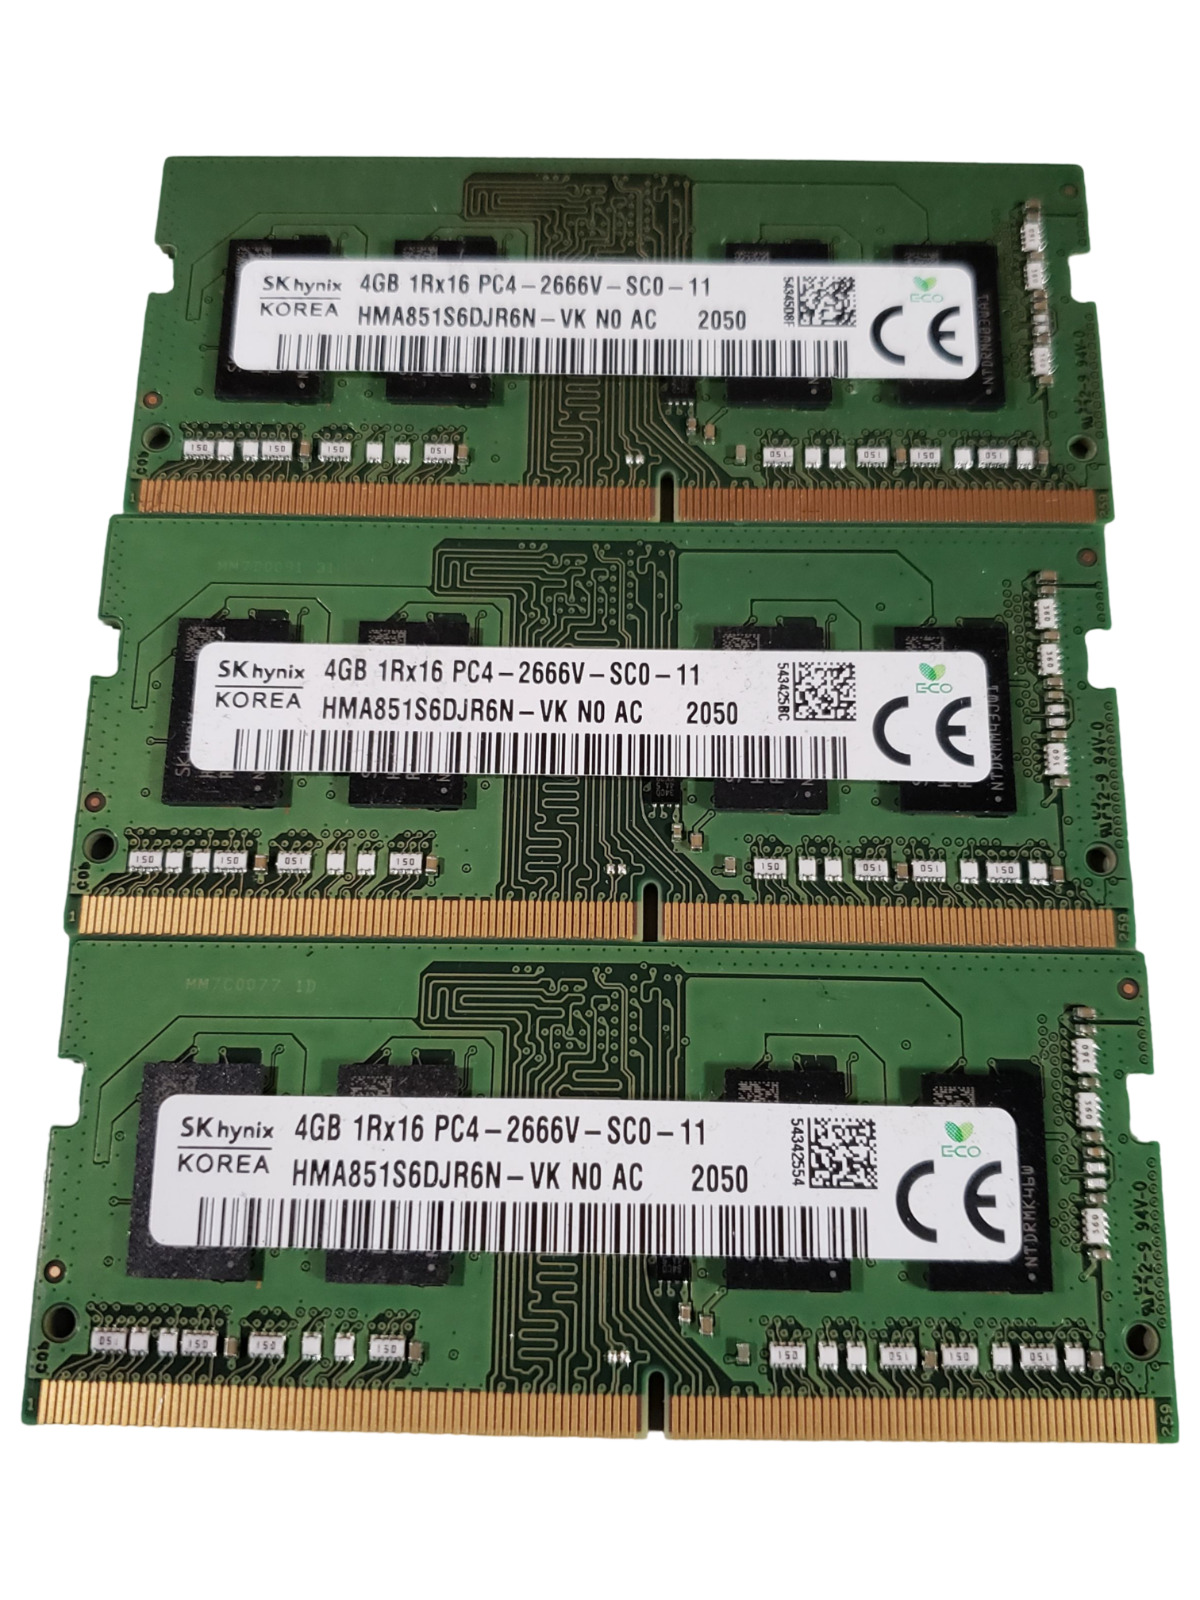 LOT OF 3 Samsung HMA851S6DJR6N-VK DDR4-2666V 12GB (3x4GB) SODIMM Memory